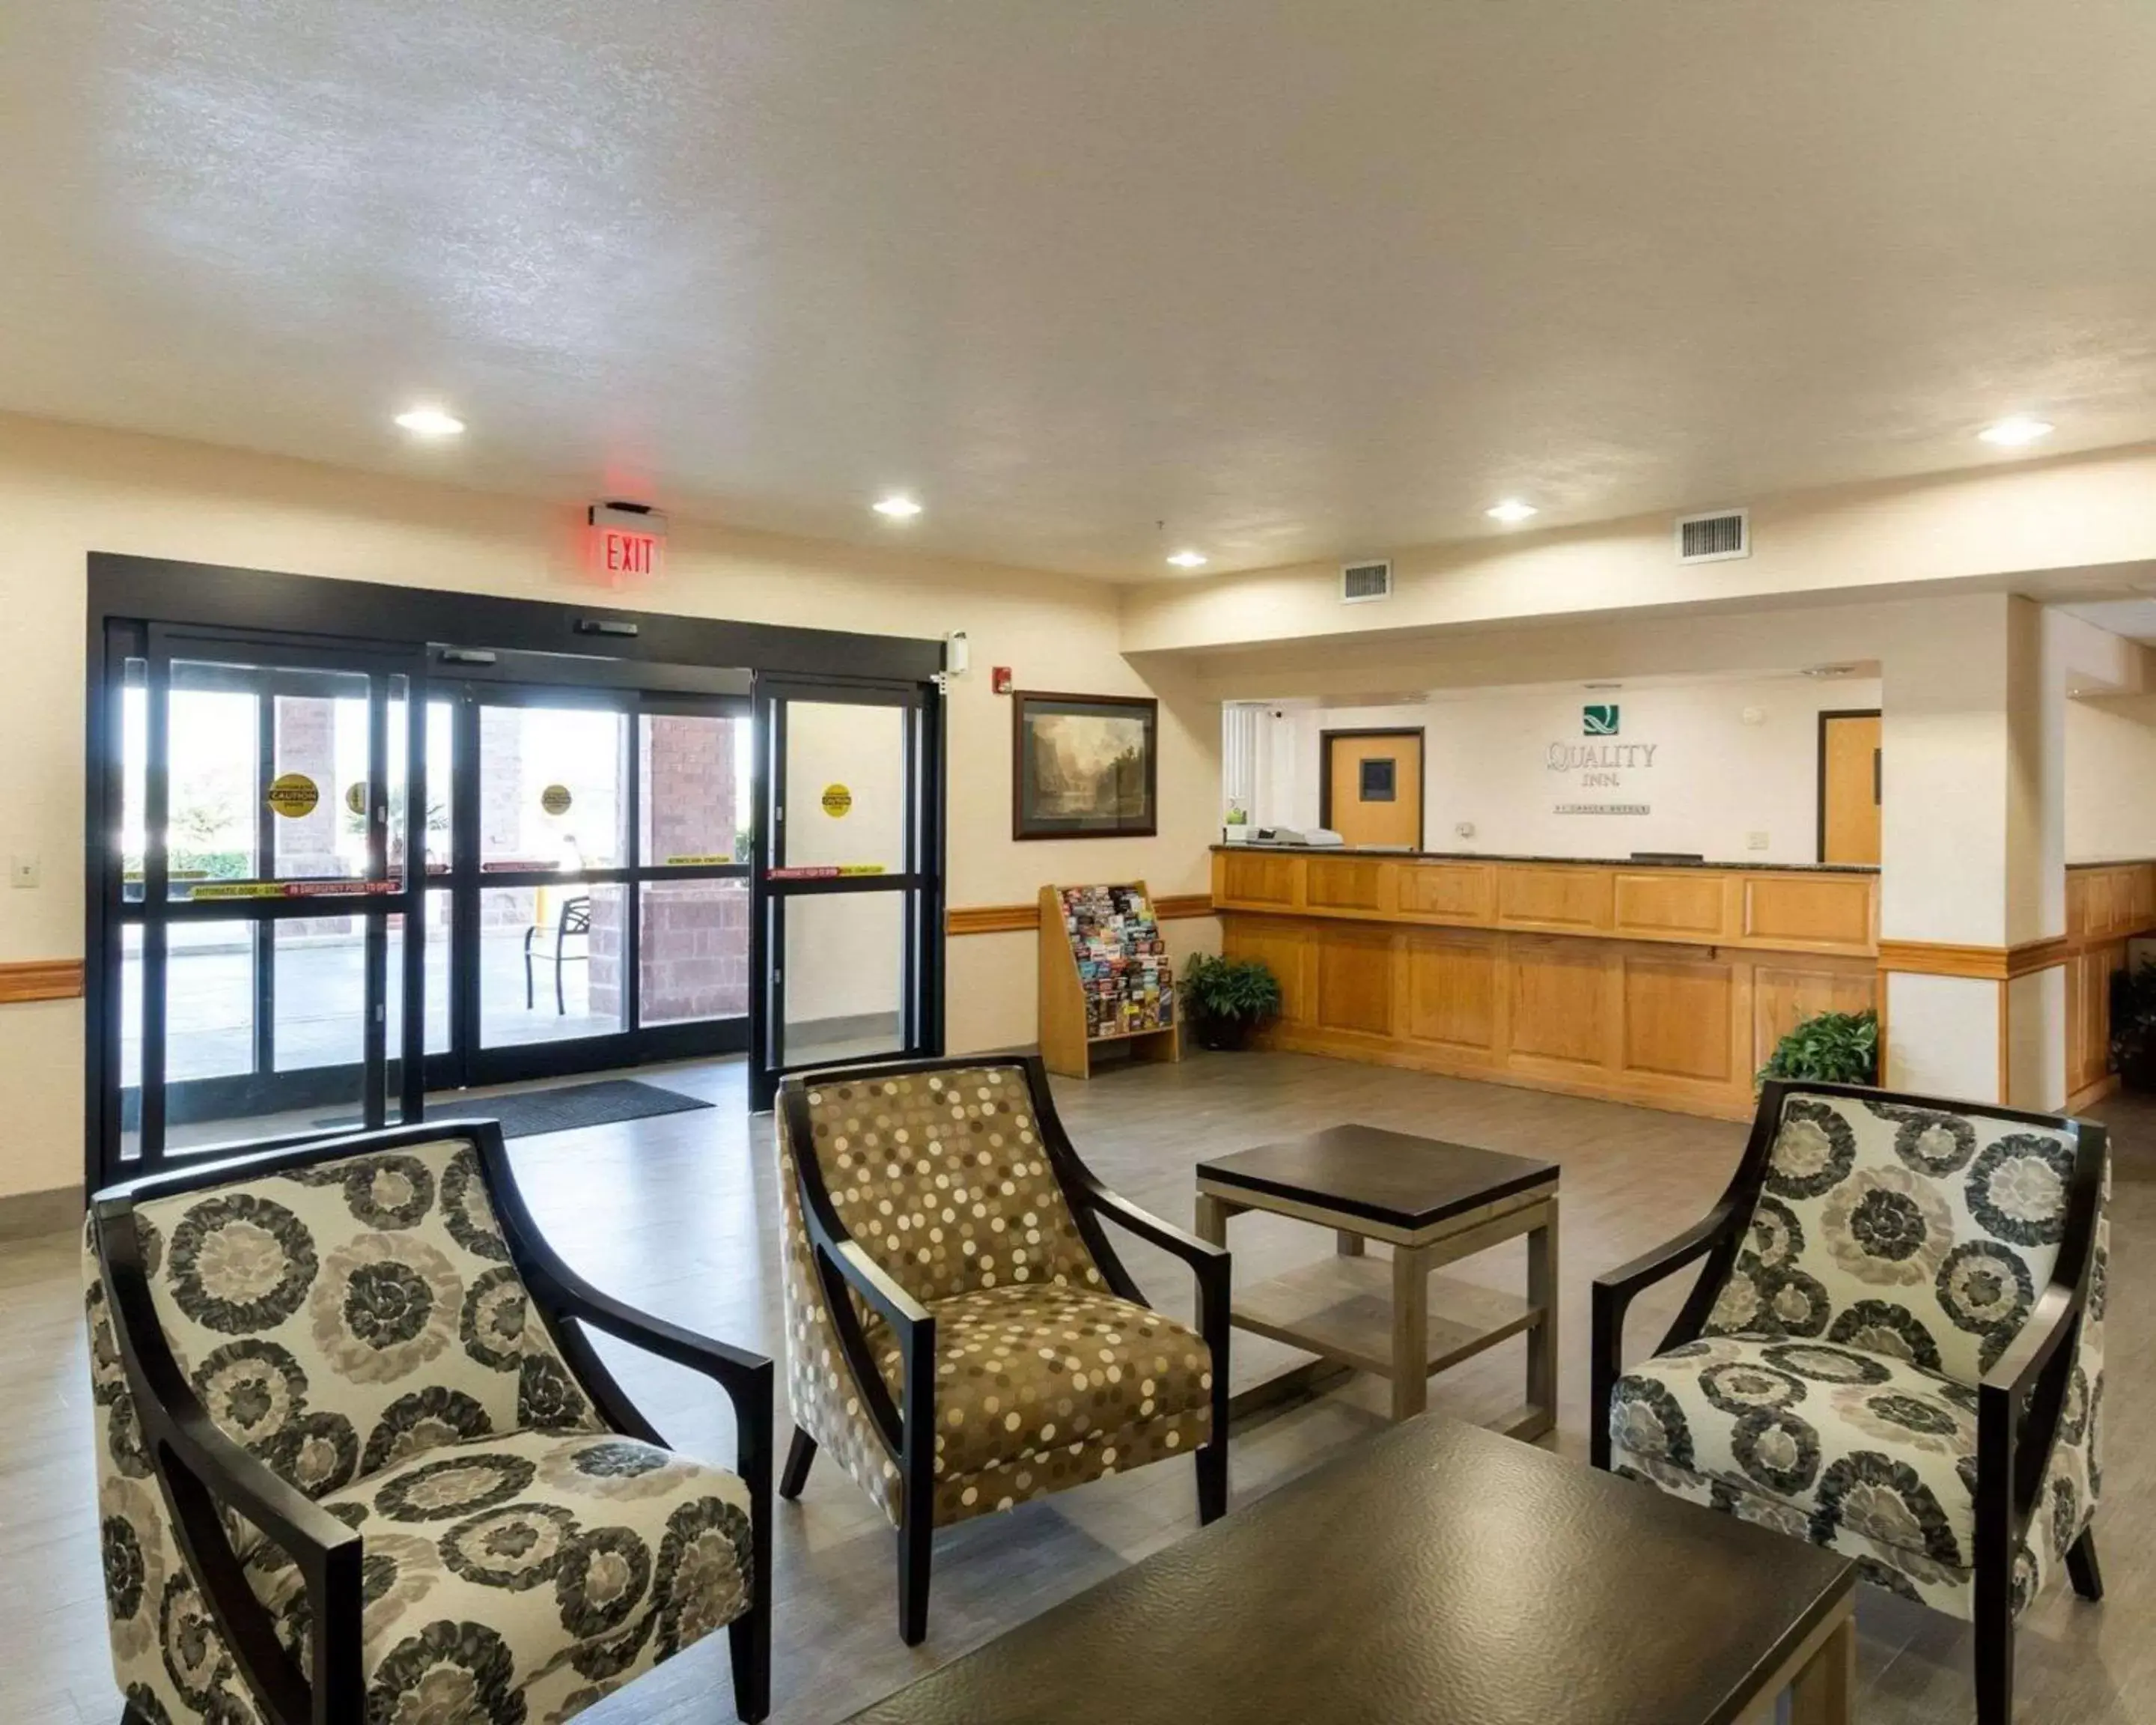 Lobby or reception, Lobby/Reception in Quality Inn Buffalo